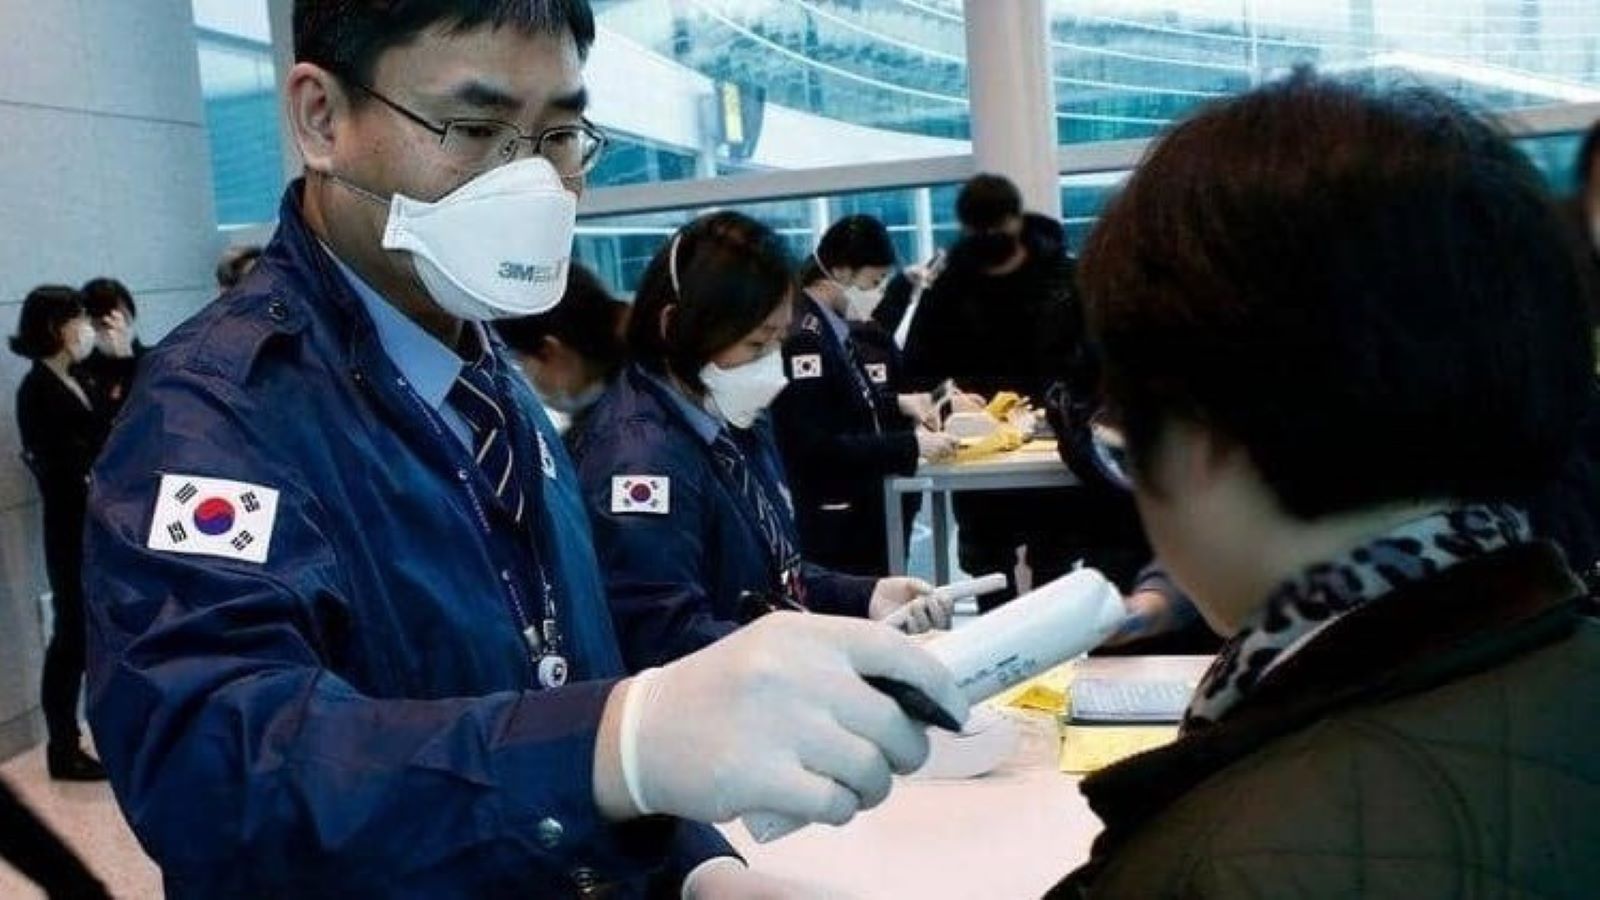 كوريا الجنوبية تسجل أكثر من 87 ألف إصابة جديدة بكورونا